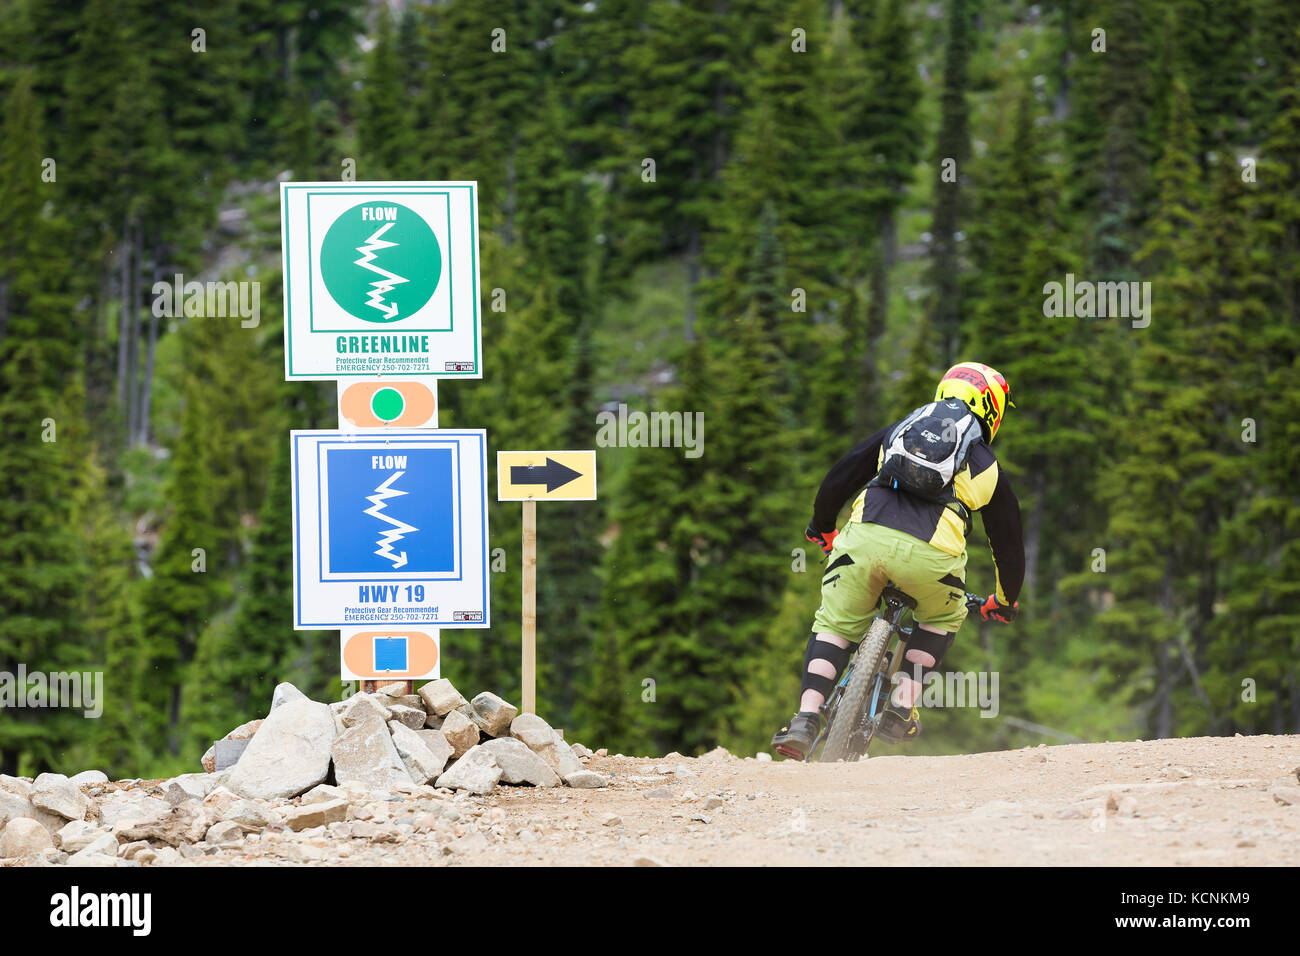 Cartello con indicazione della direzione e del livello di difficoltà del sentiero Washington, la Comox Valley, Vancouver Island, British Columbia, Canada Foto Stock